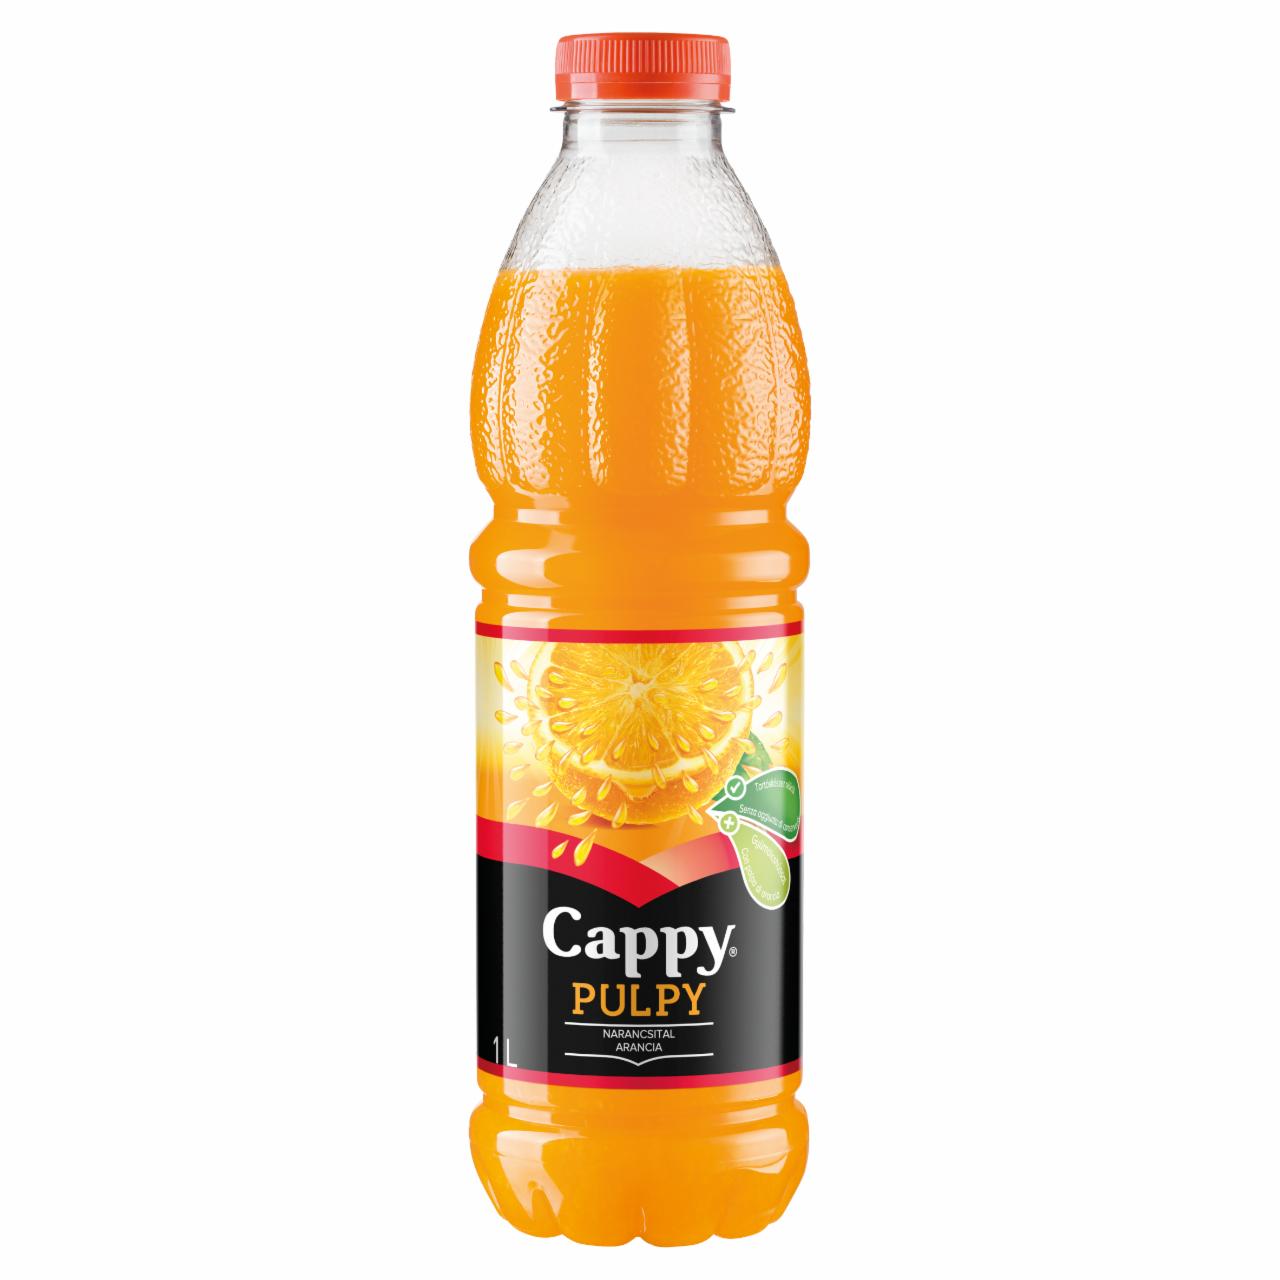 Képek - Cappy Pulpy szénsavmentes narancsital narancs gyümölcshússal, cukorral és édesítőszerrel 1 l